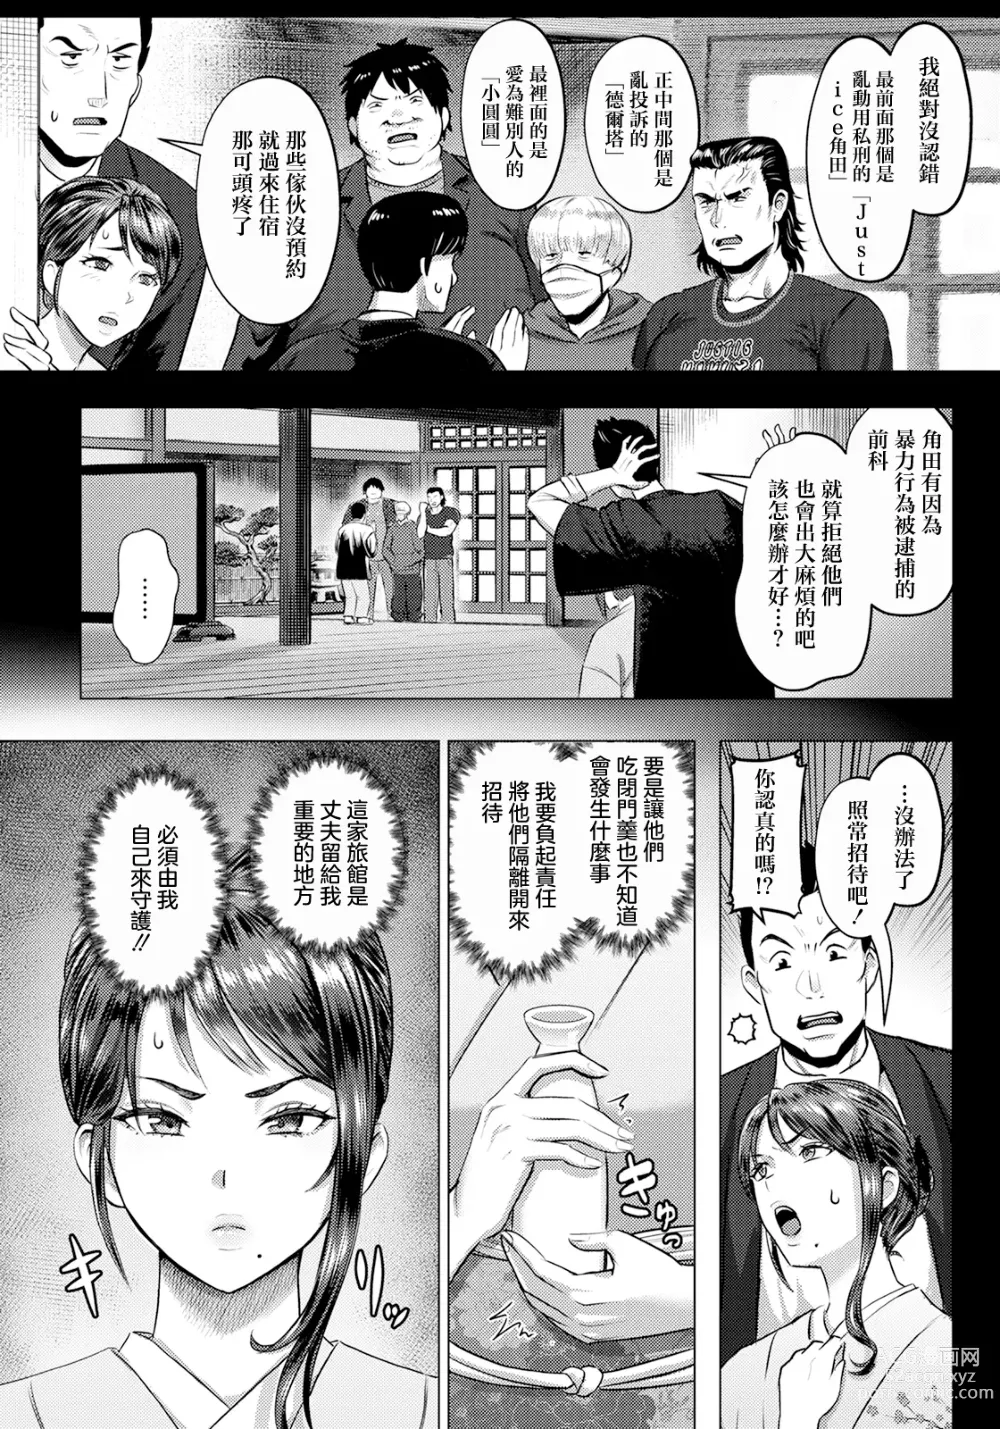 Page 6 of manga Injoku Ryokan